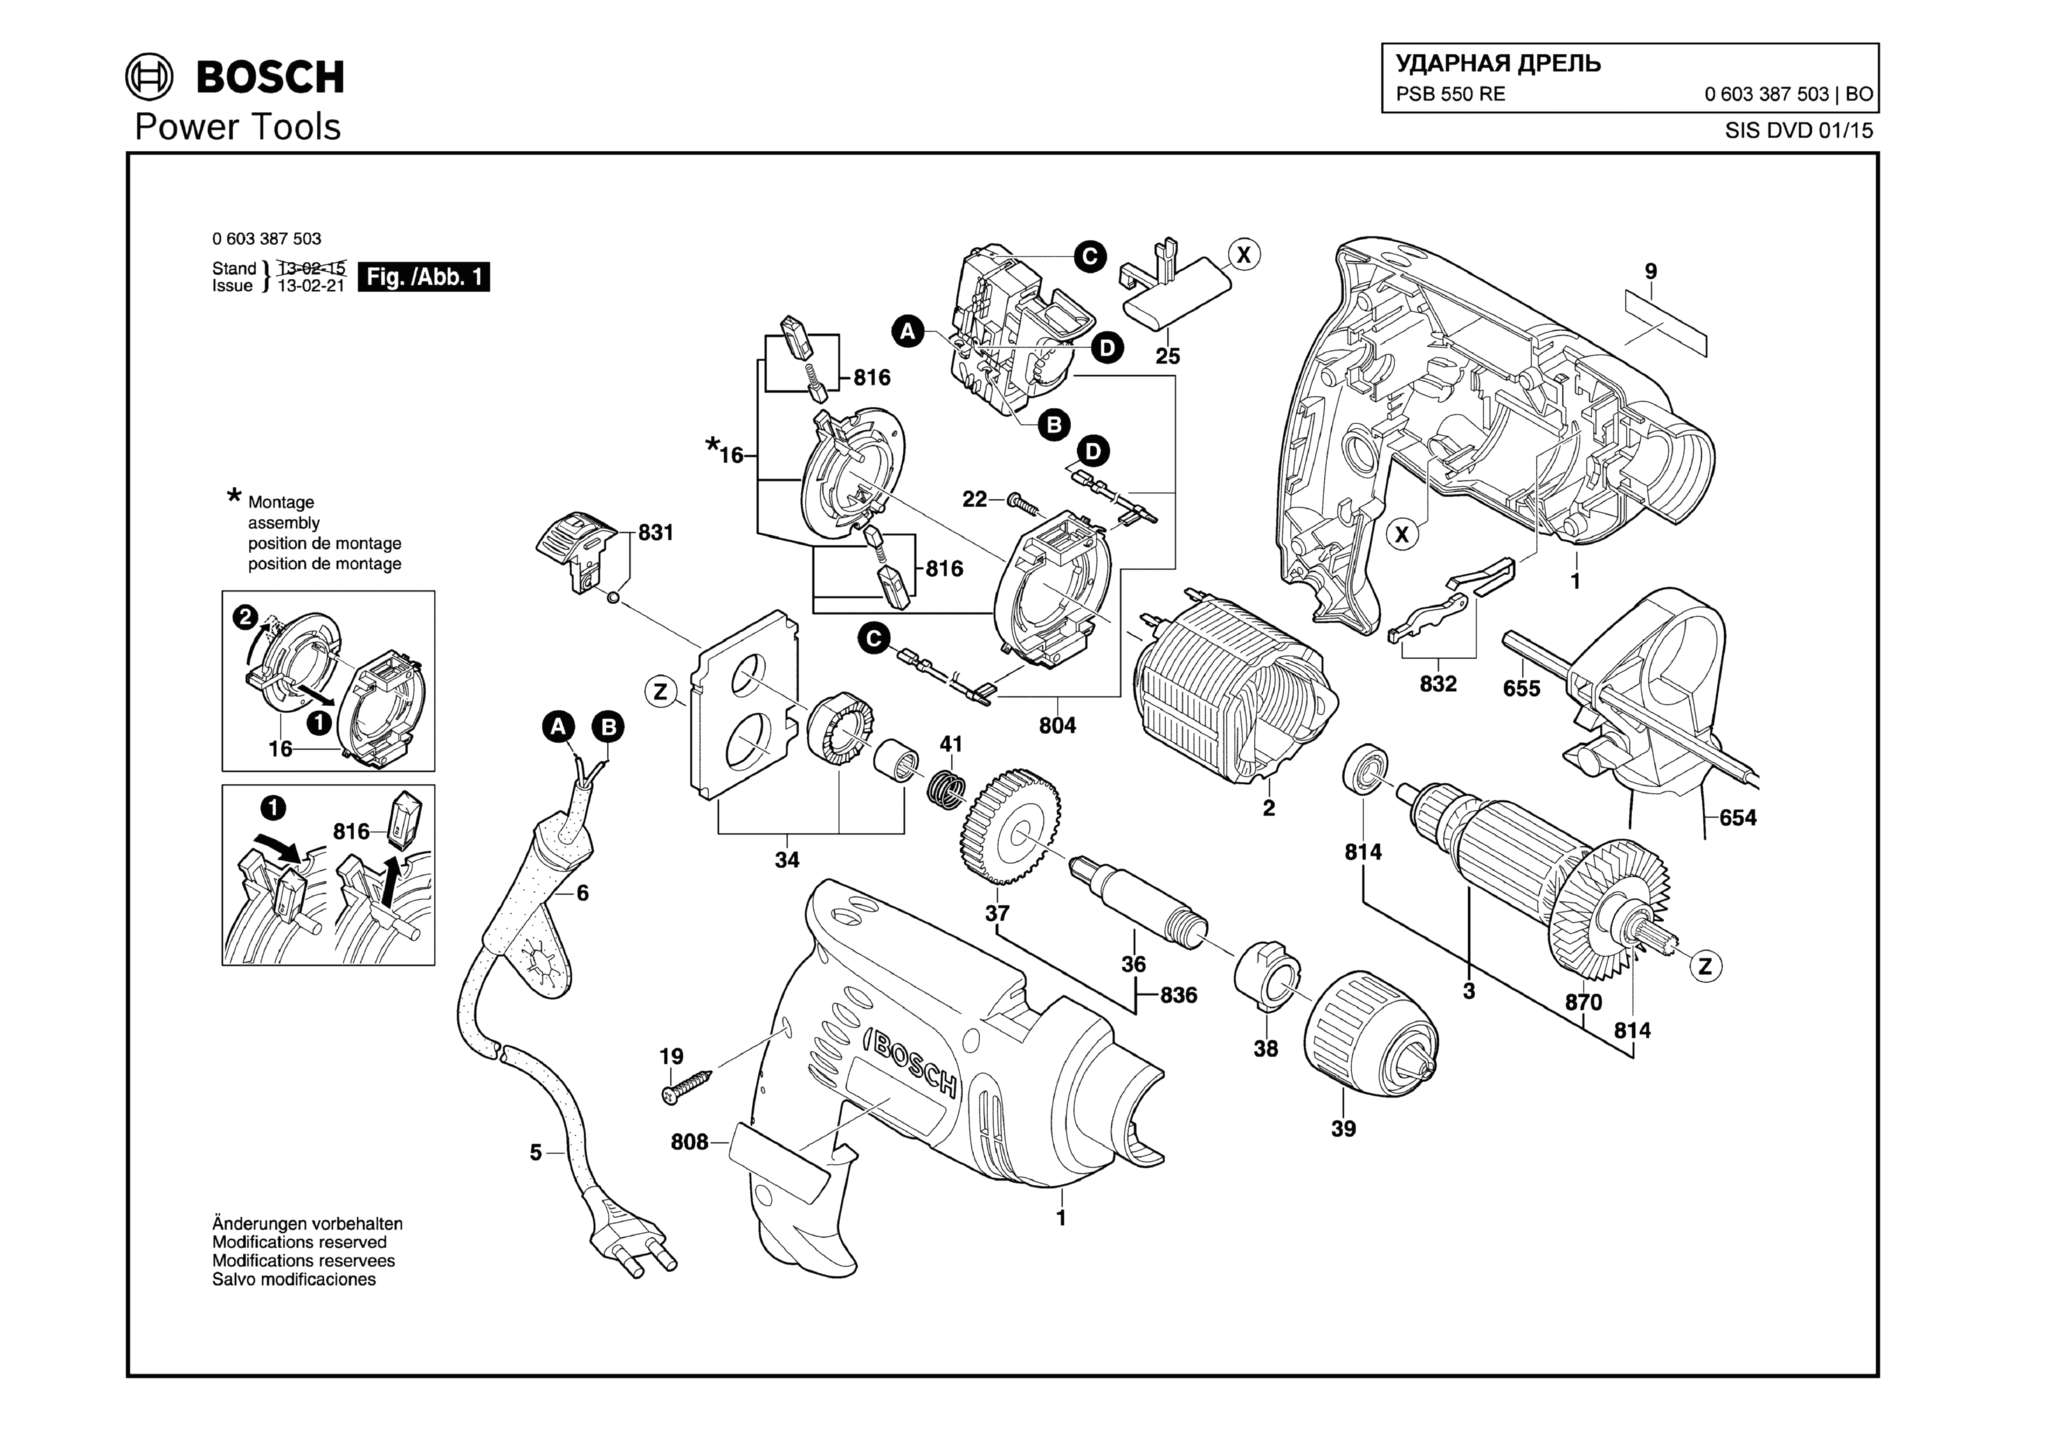 Запчасти, схема и деталировка Bosch PSB 550 RE (ТИП 0603387503)